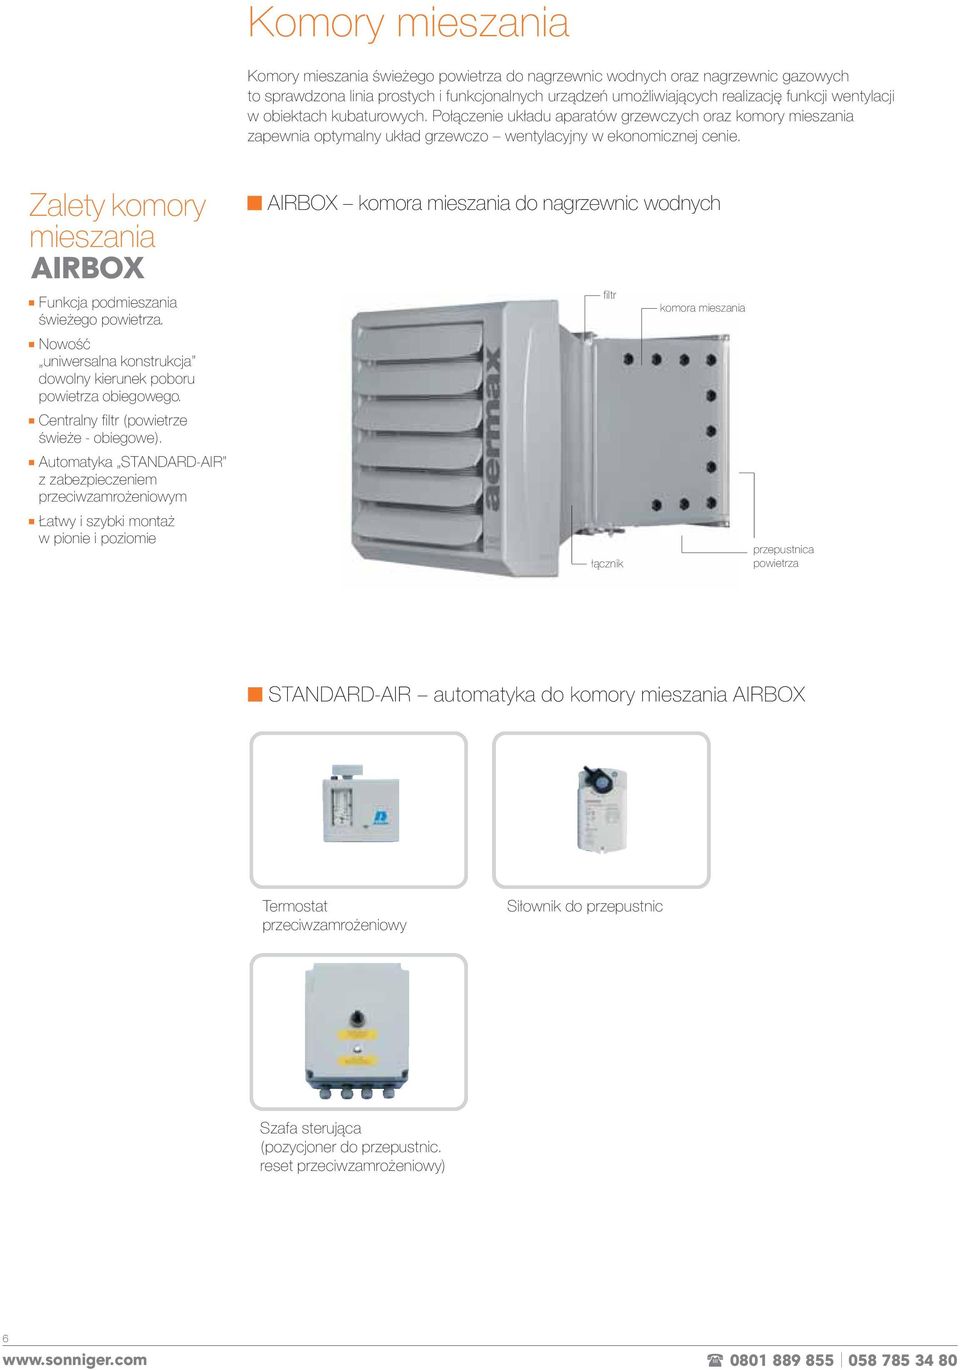 Zalety komory mieszania AIRBOX Funkcja podmieszania świeżego powietrza. Nowość uniwersalna konstrukcja dowolny kierunek poboru powietrza obiegowego. Centralny filtr (powietrze świeże - obiegowe).